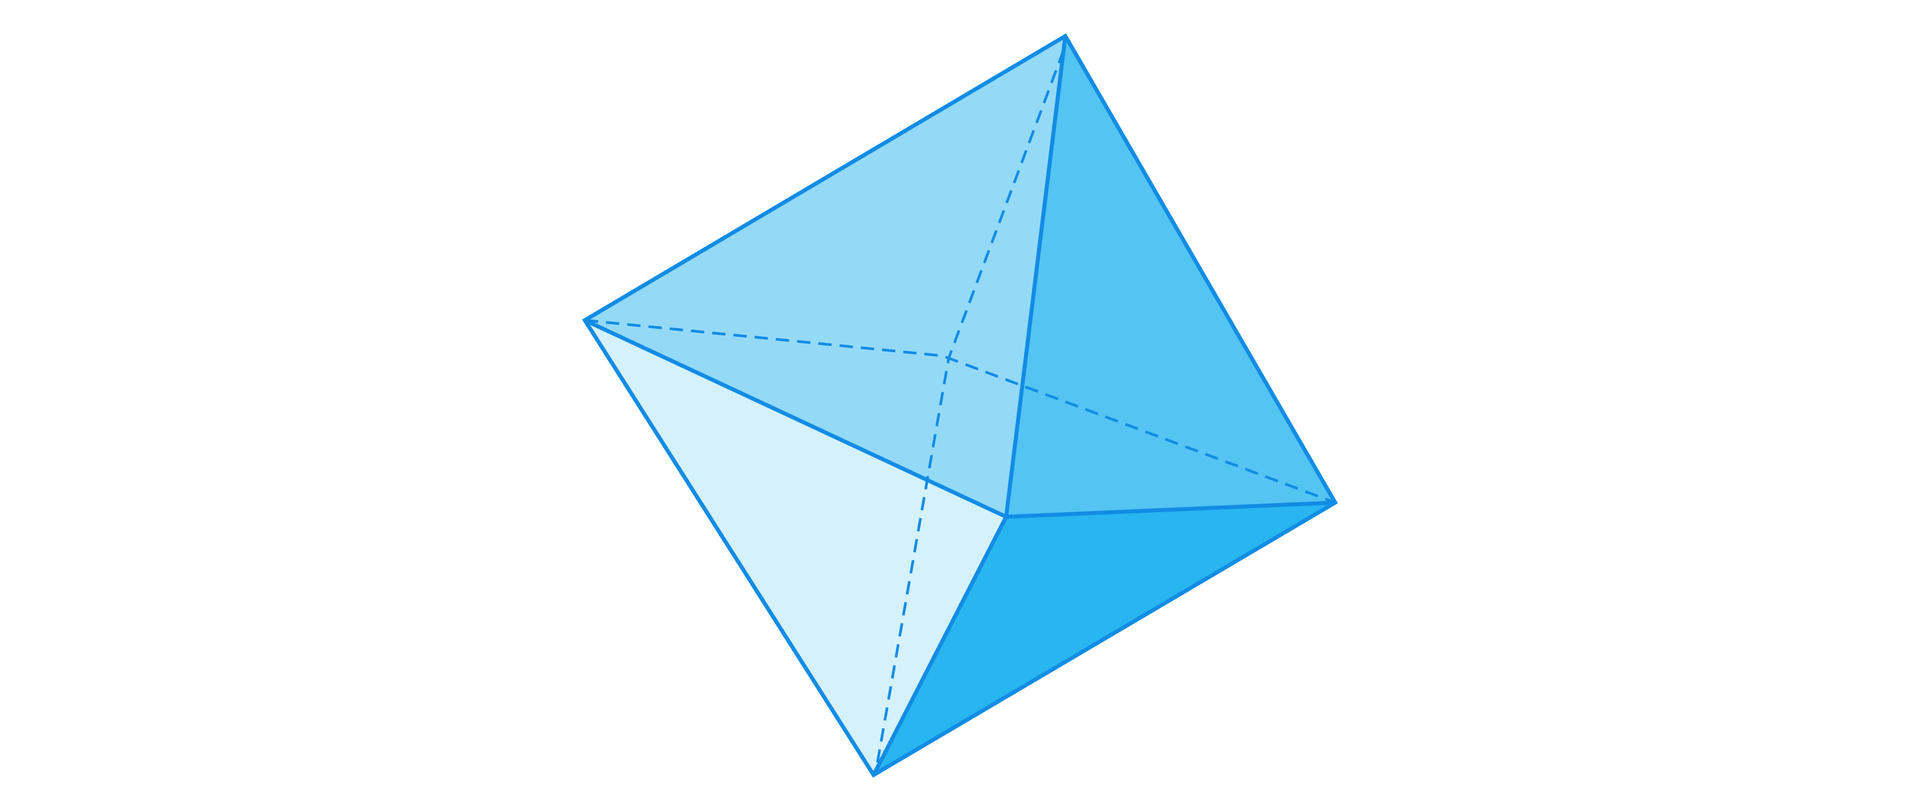 Ilustracja przedstawia ośmiościan foremny, jego ścianami bocznymi są trójkąty równoboczne. Kształtem bryła ta przypomina połączone ze sobą dwa ostrosłupy o podstawie czworokąta. 